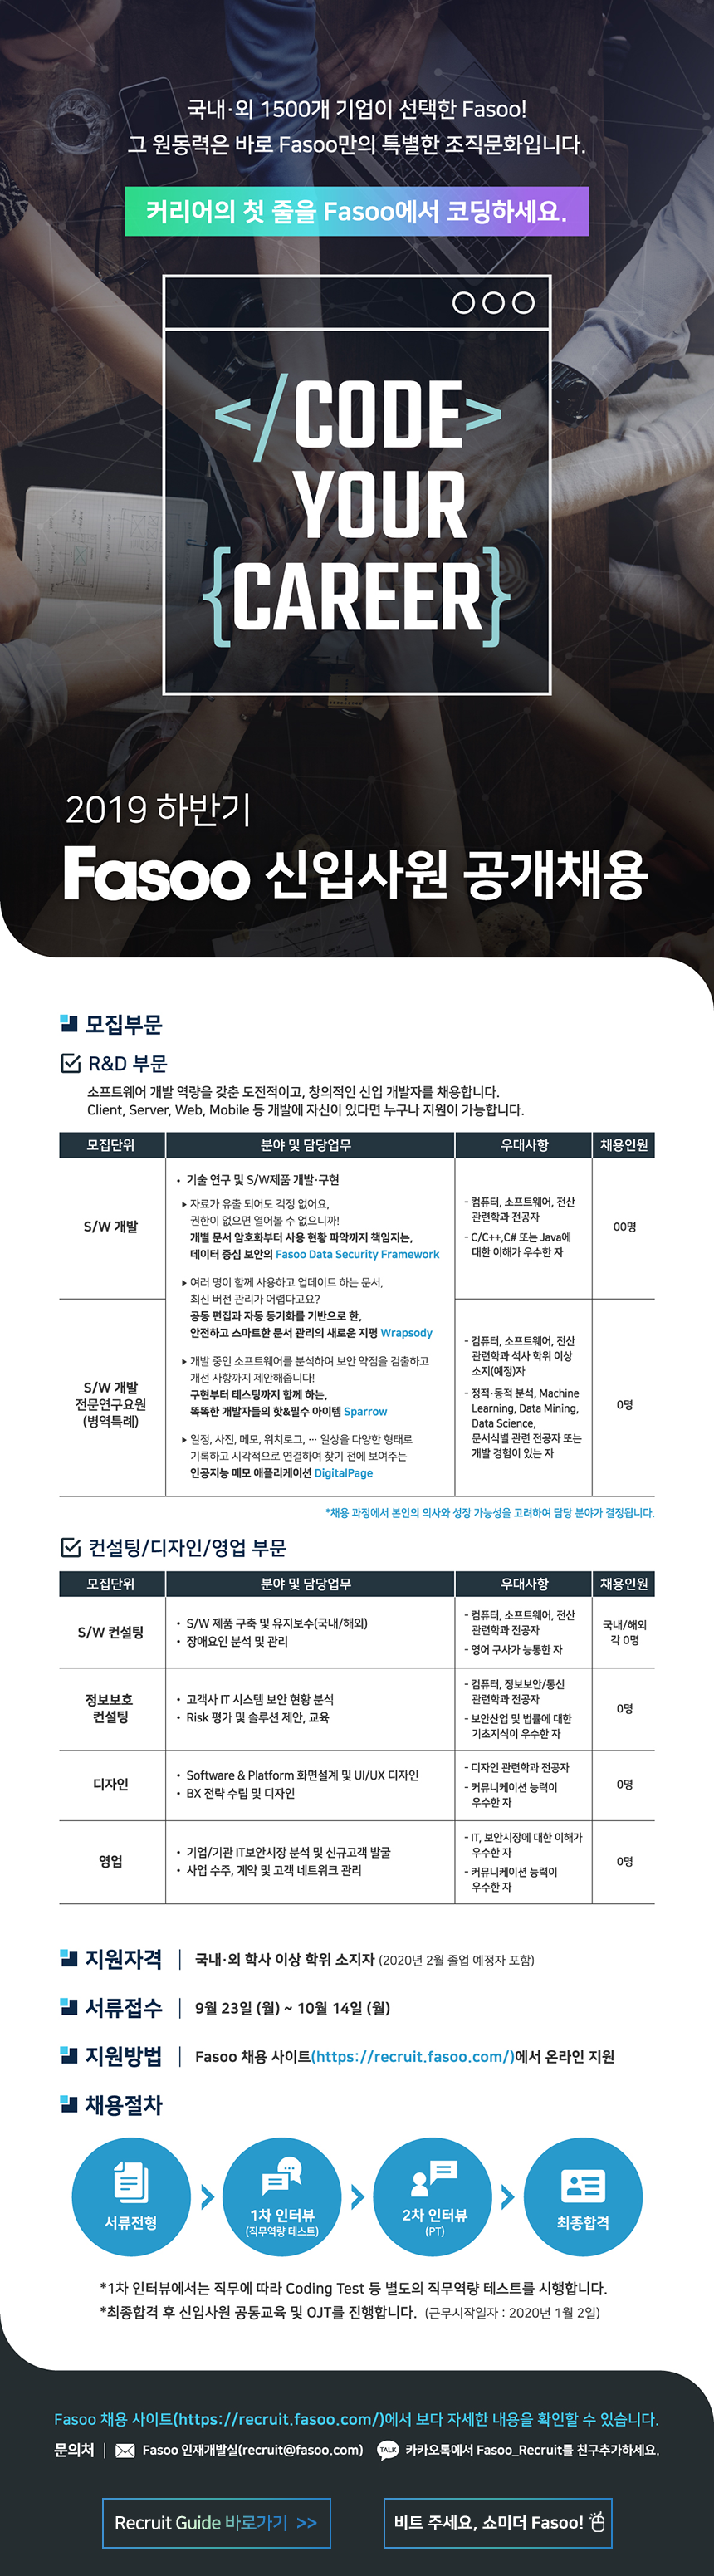 ㈜파수닷컴 2019년 하반기 Fasoo 신입사원 공개채용